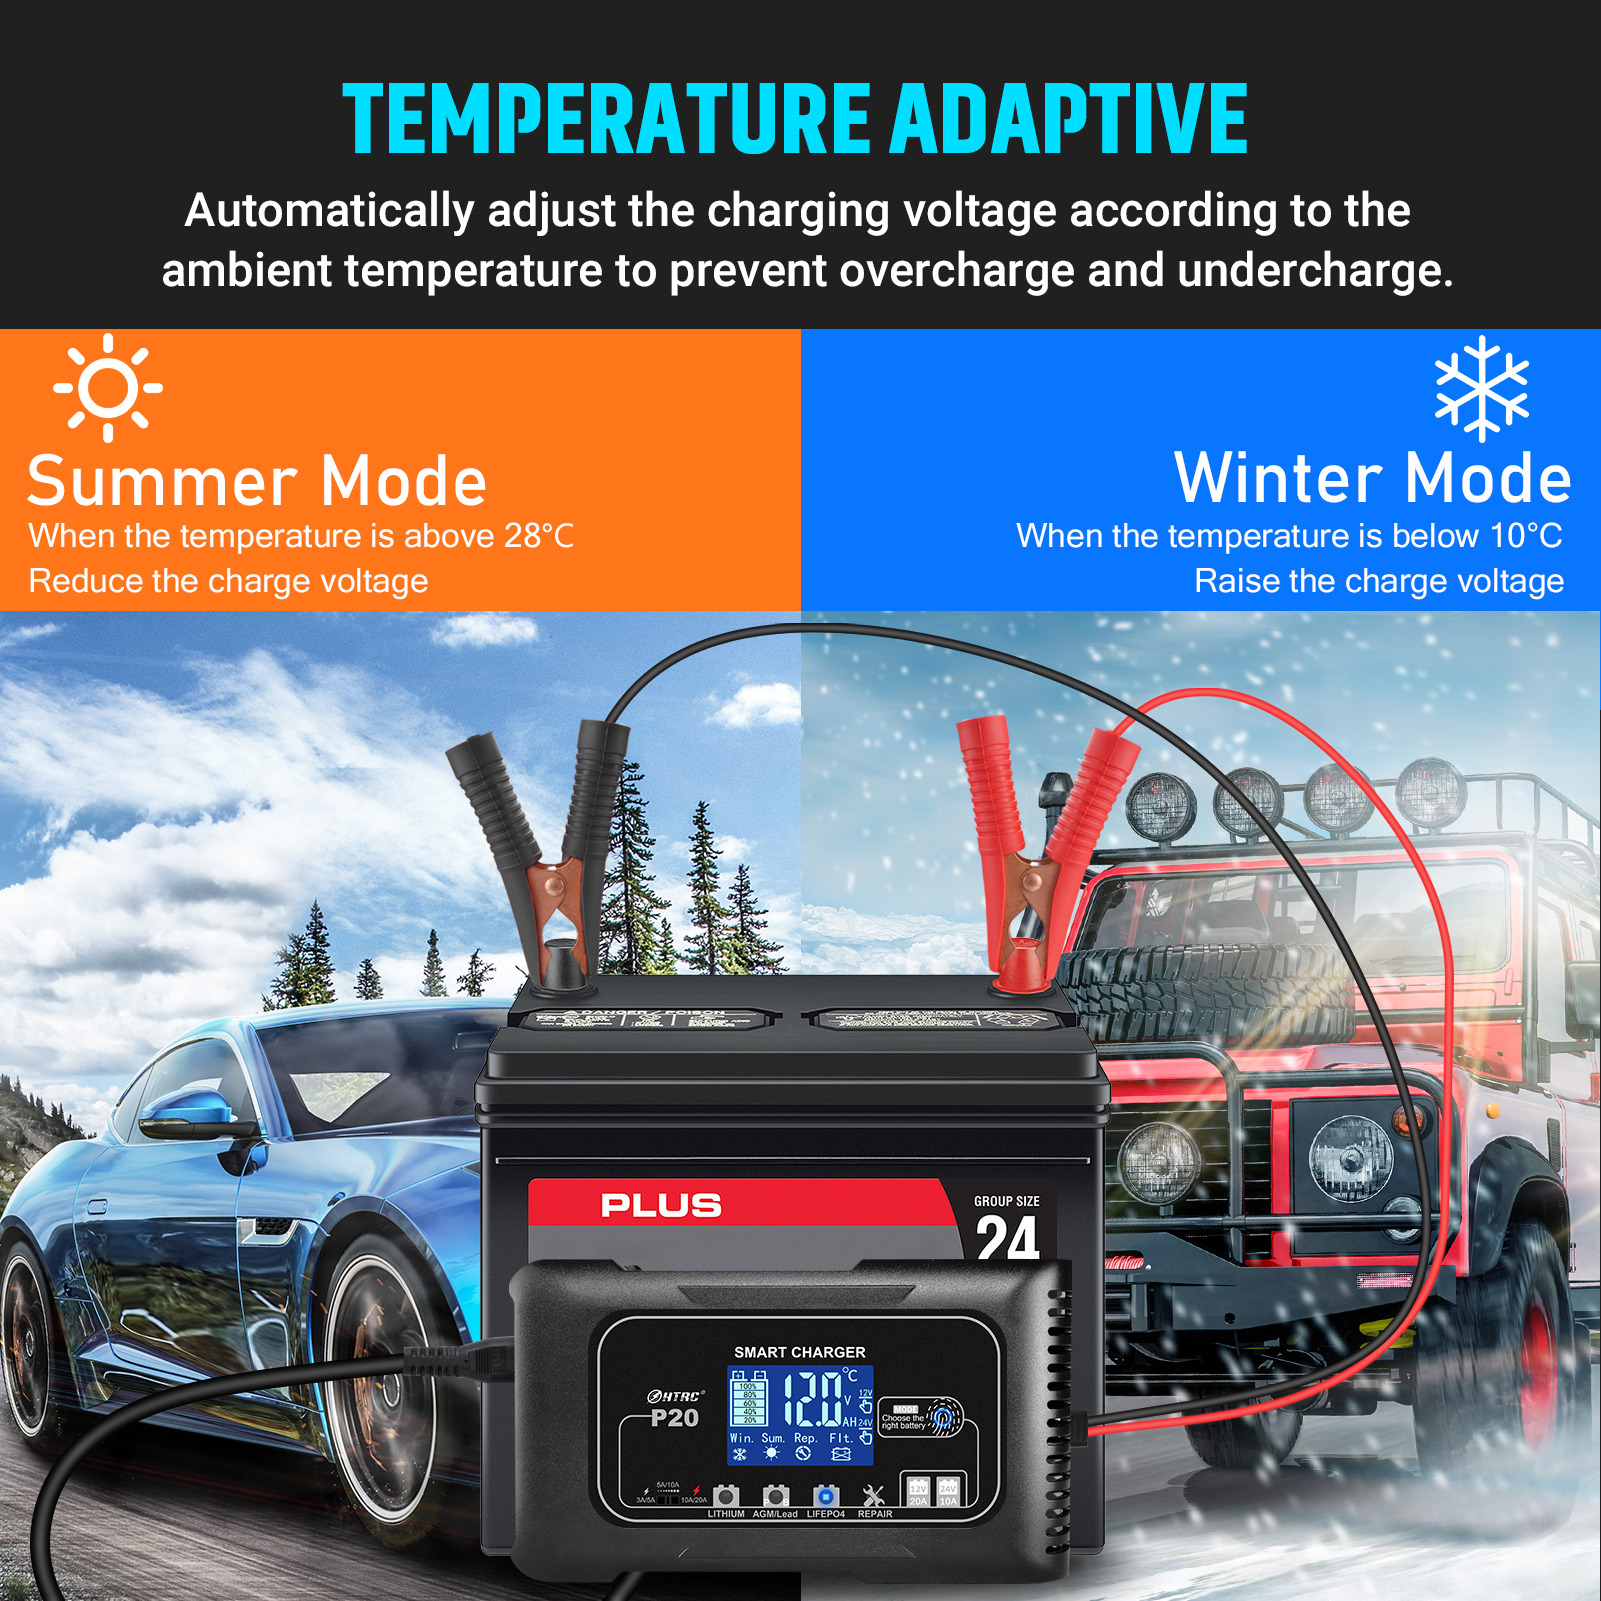 Temperature Adaptive